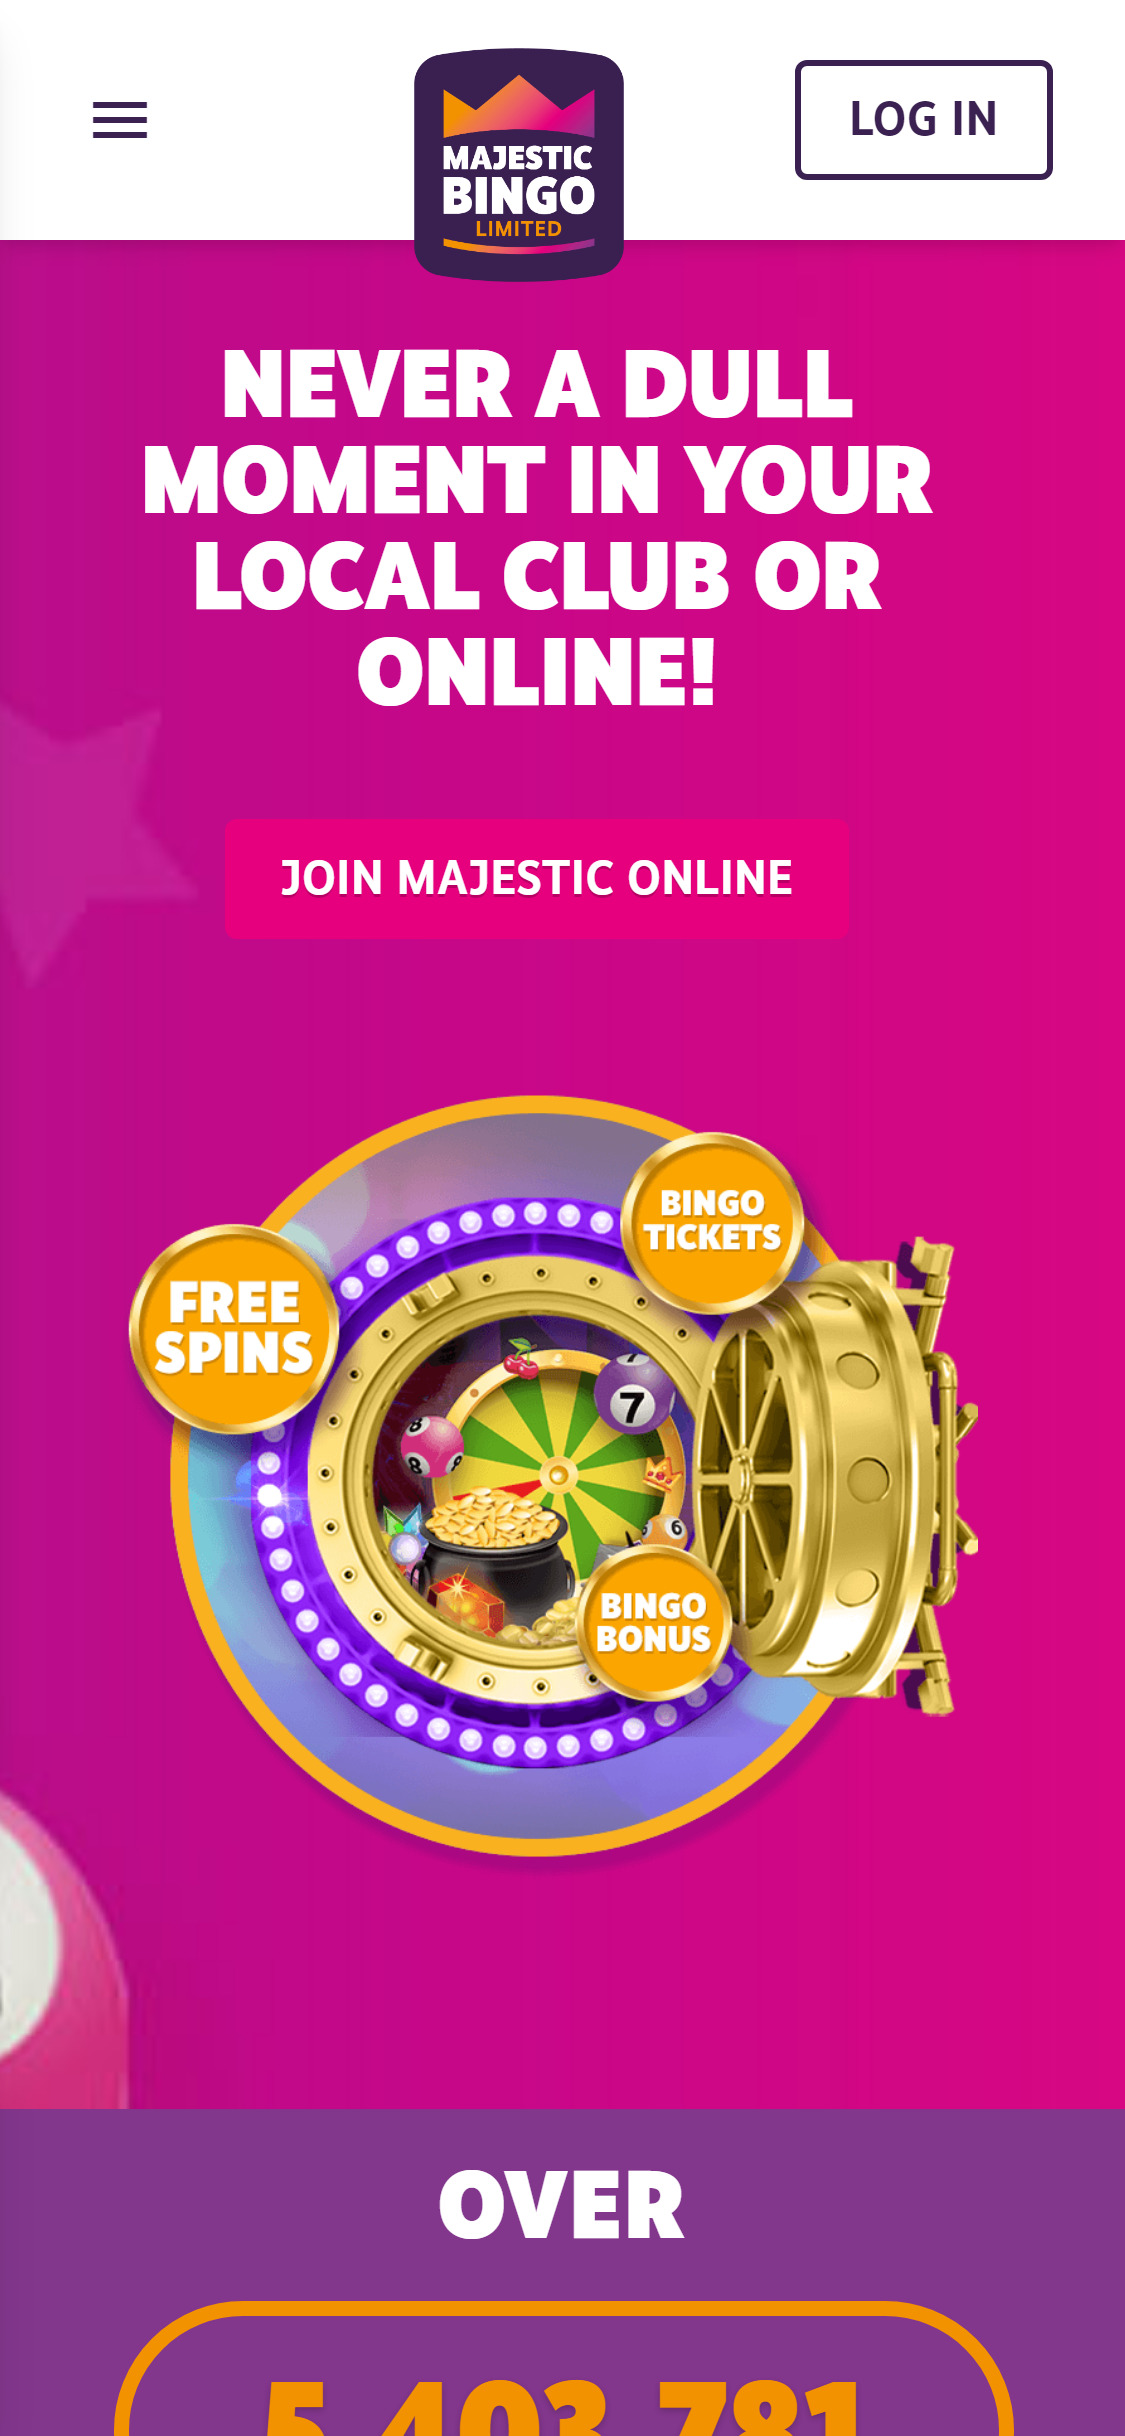 Majestic Bingo Casino Mobile Review